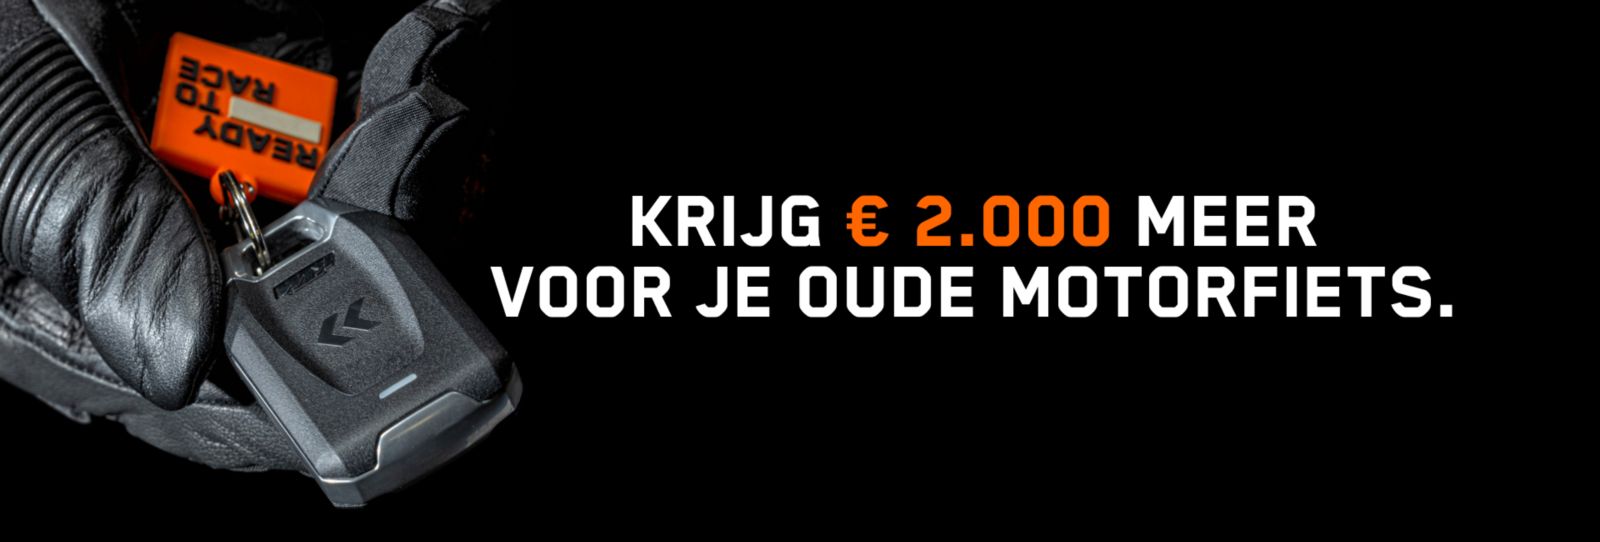 Krijg €2000 extra inruil korting op een nieuwe KTM!